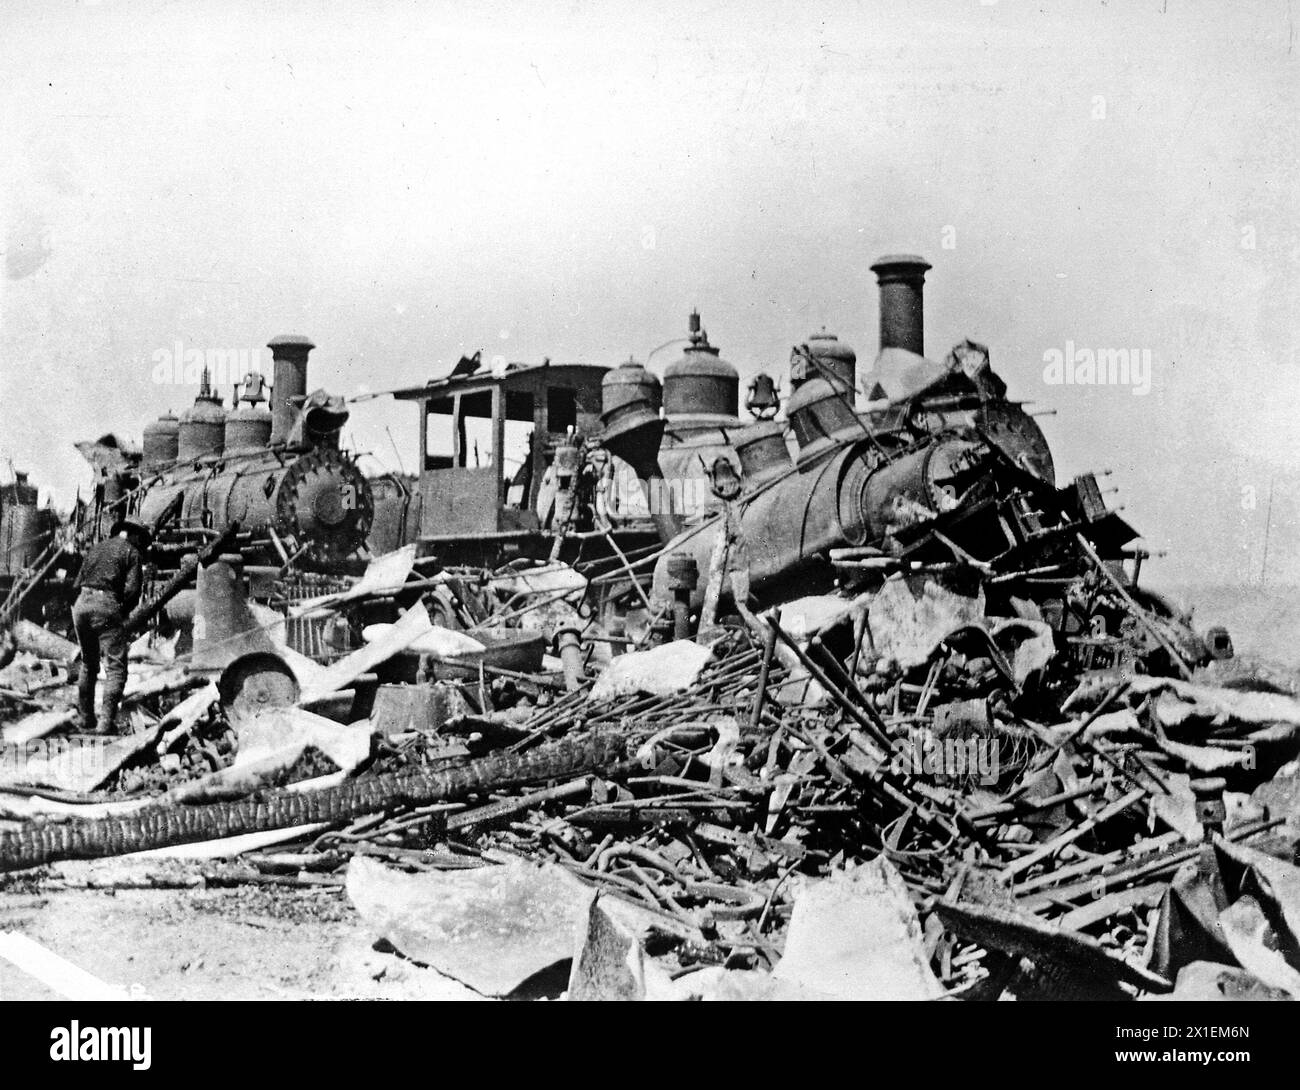 Burned locomotives at Daiquiri. Cuba ca. 1898 Stock Photo